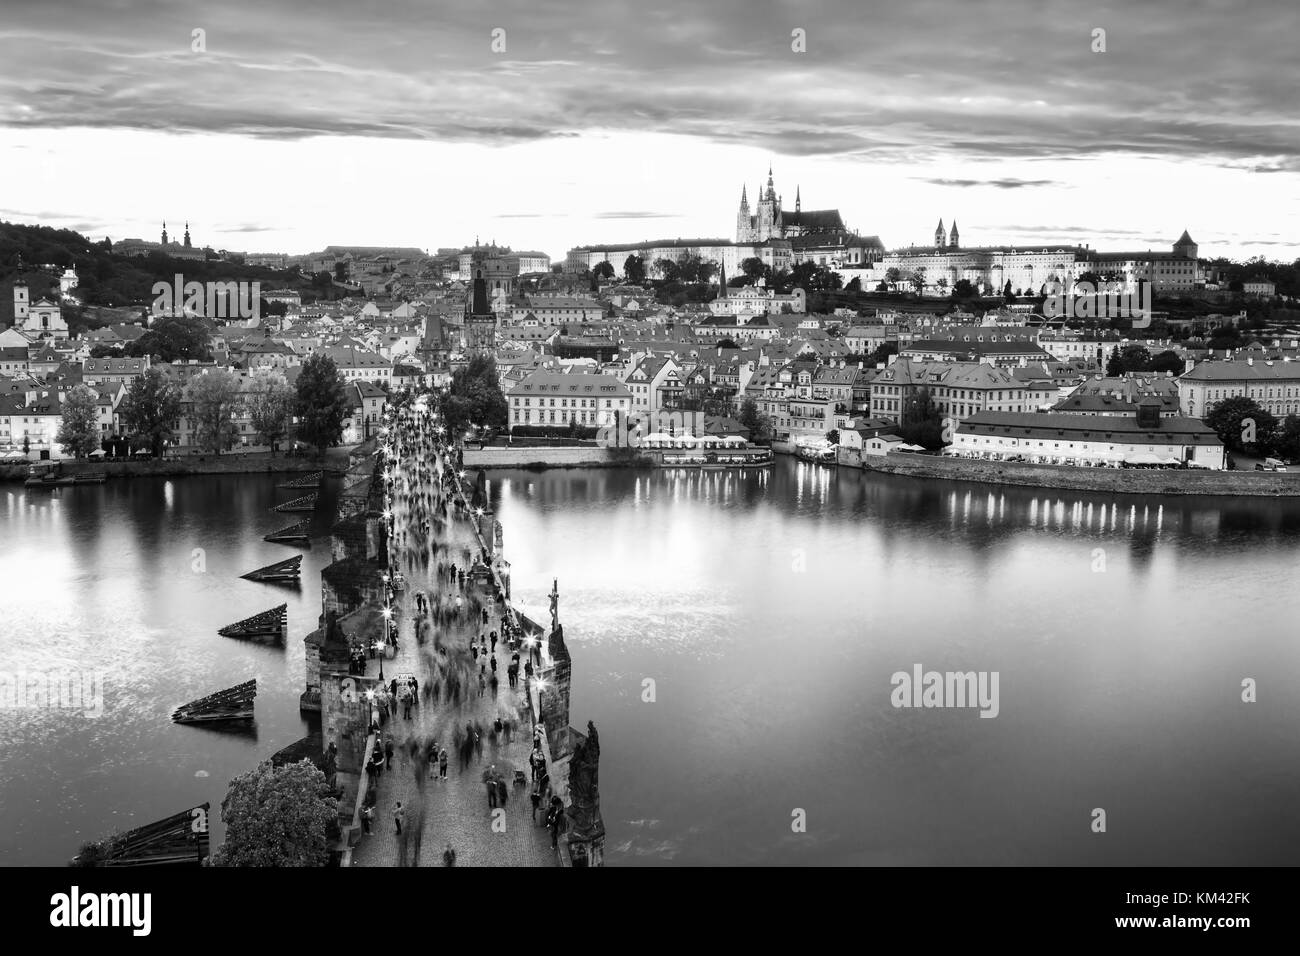 Malerische Aussicht auf die Karlsbrücke über die Moldau und das historische Zentrum von Prag, Gebäude und Wahrzeichen der Altstadt, Prag, Tschechische rapublic Stockfoto